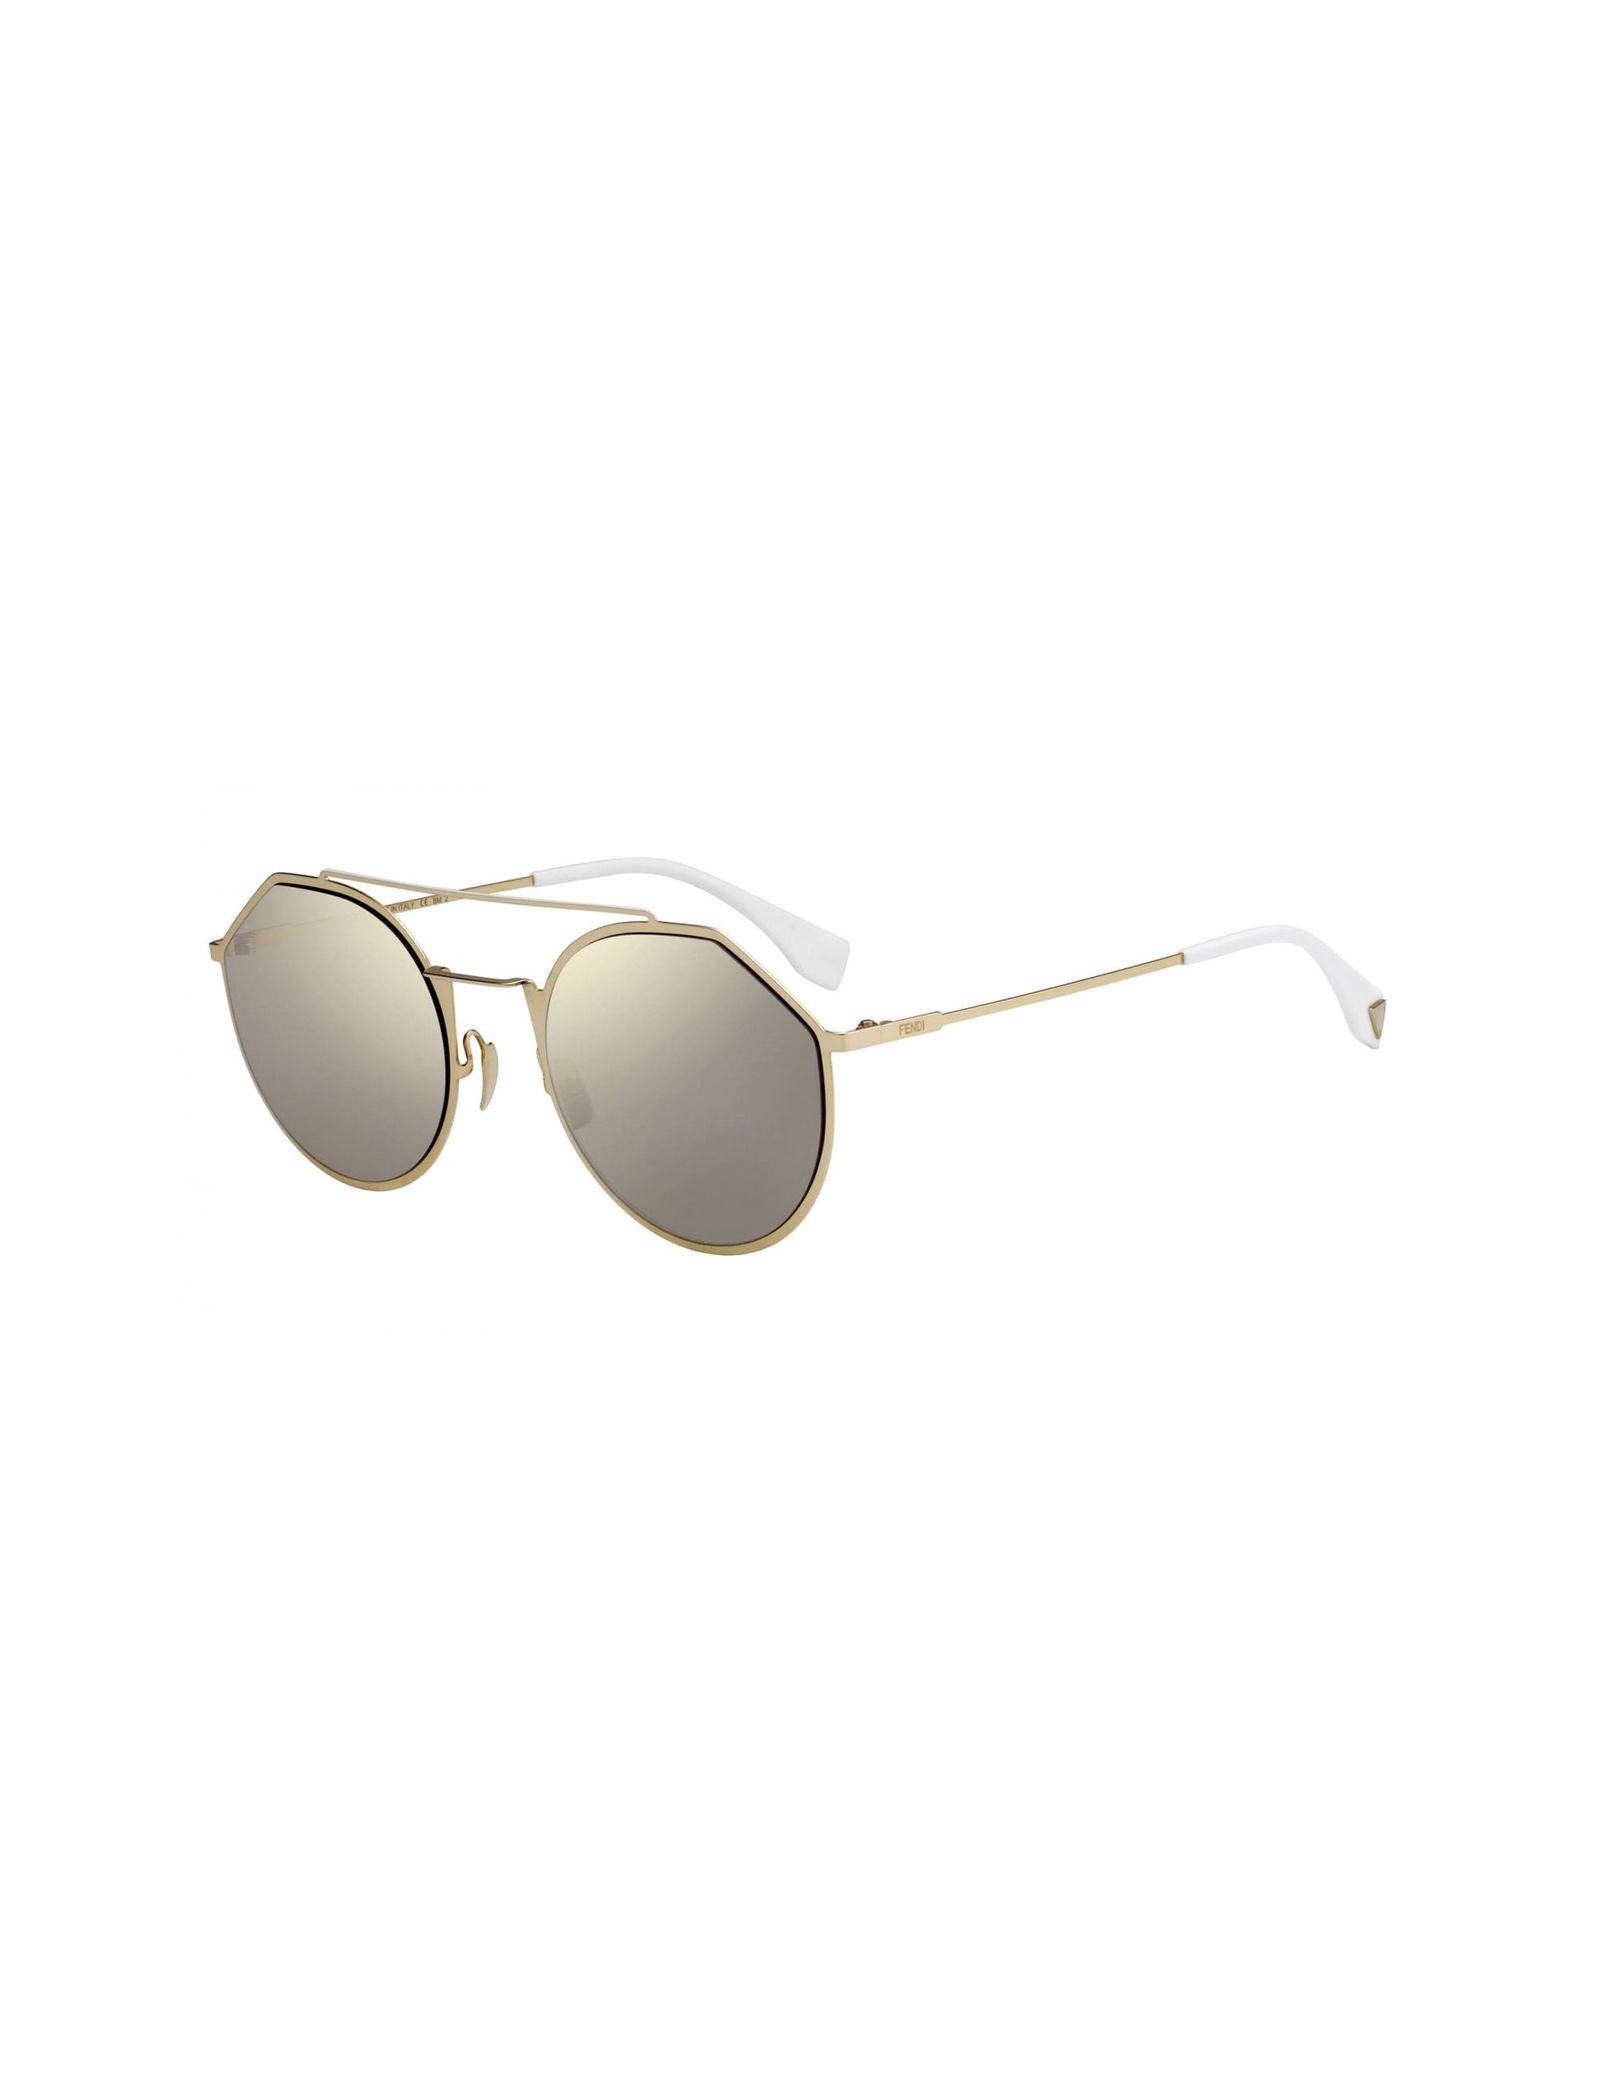 عینک آفتابی خلبانی مردانه - فندی - طلايي - 2